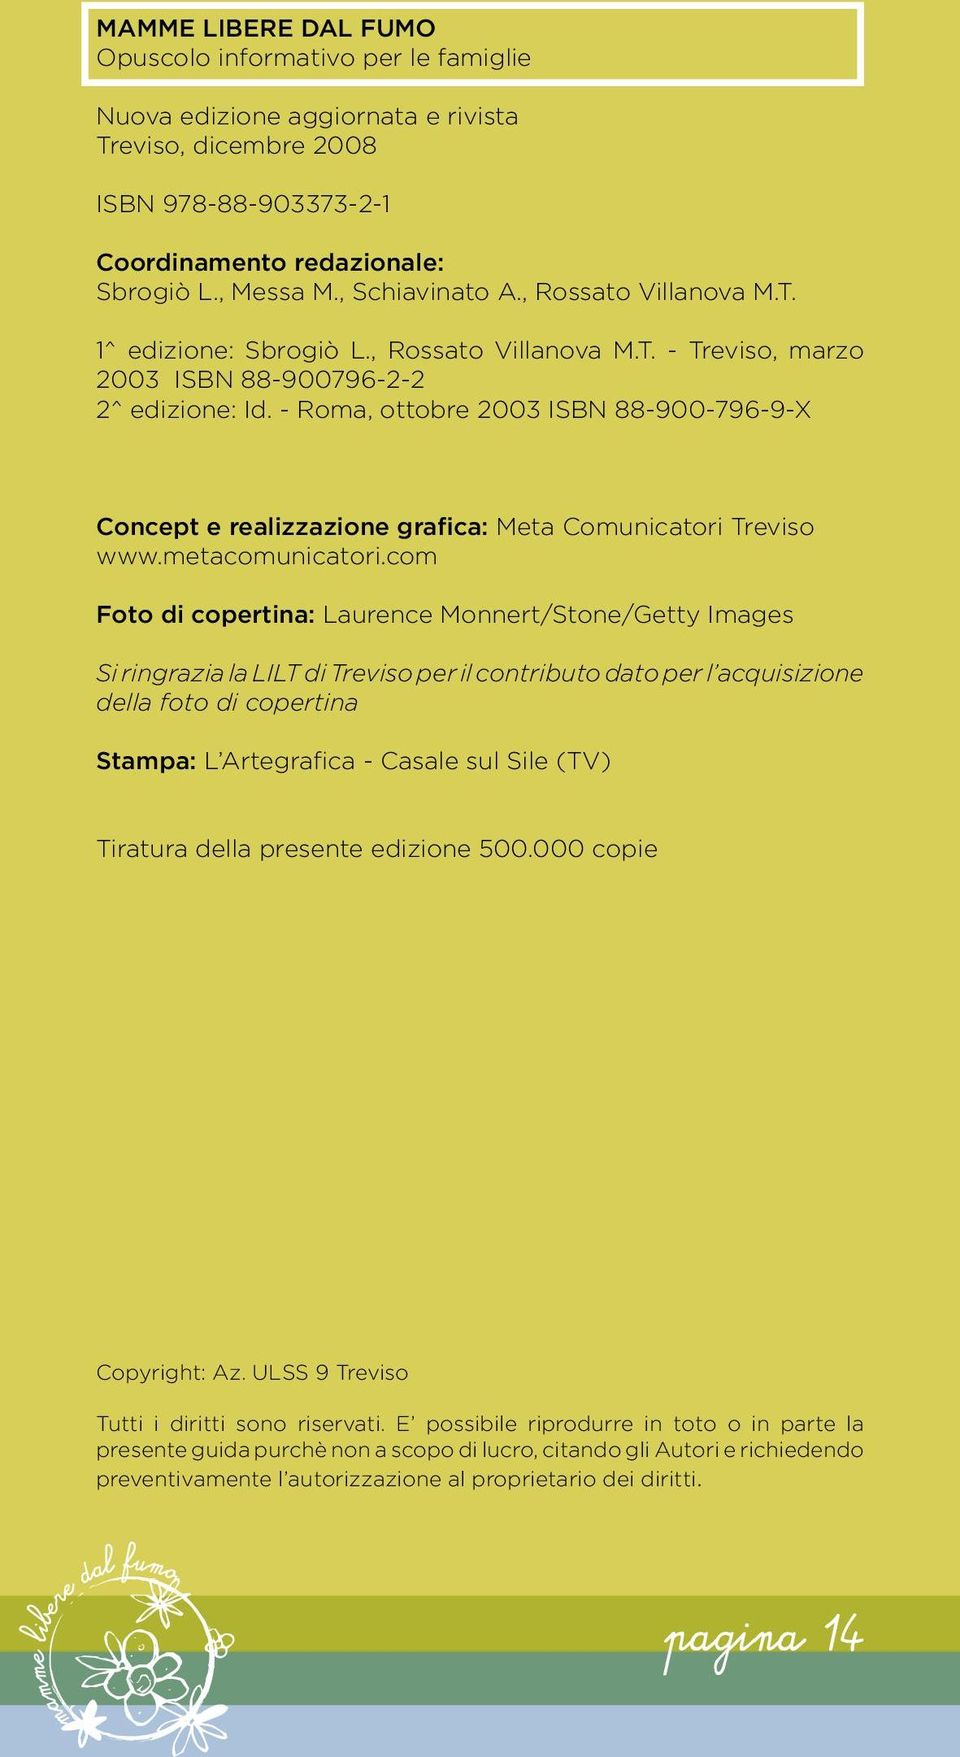 - Roma, ottobre 2003 ISBN 88-900-796-9-X Concept e realizzazione grafica: Meta Comunicatori Treviso www.metacomunicatori.